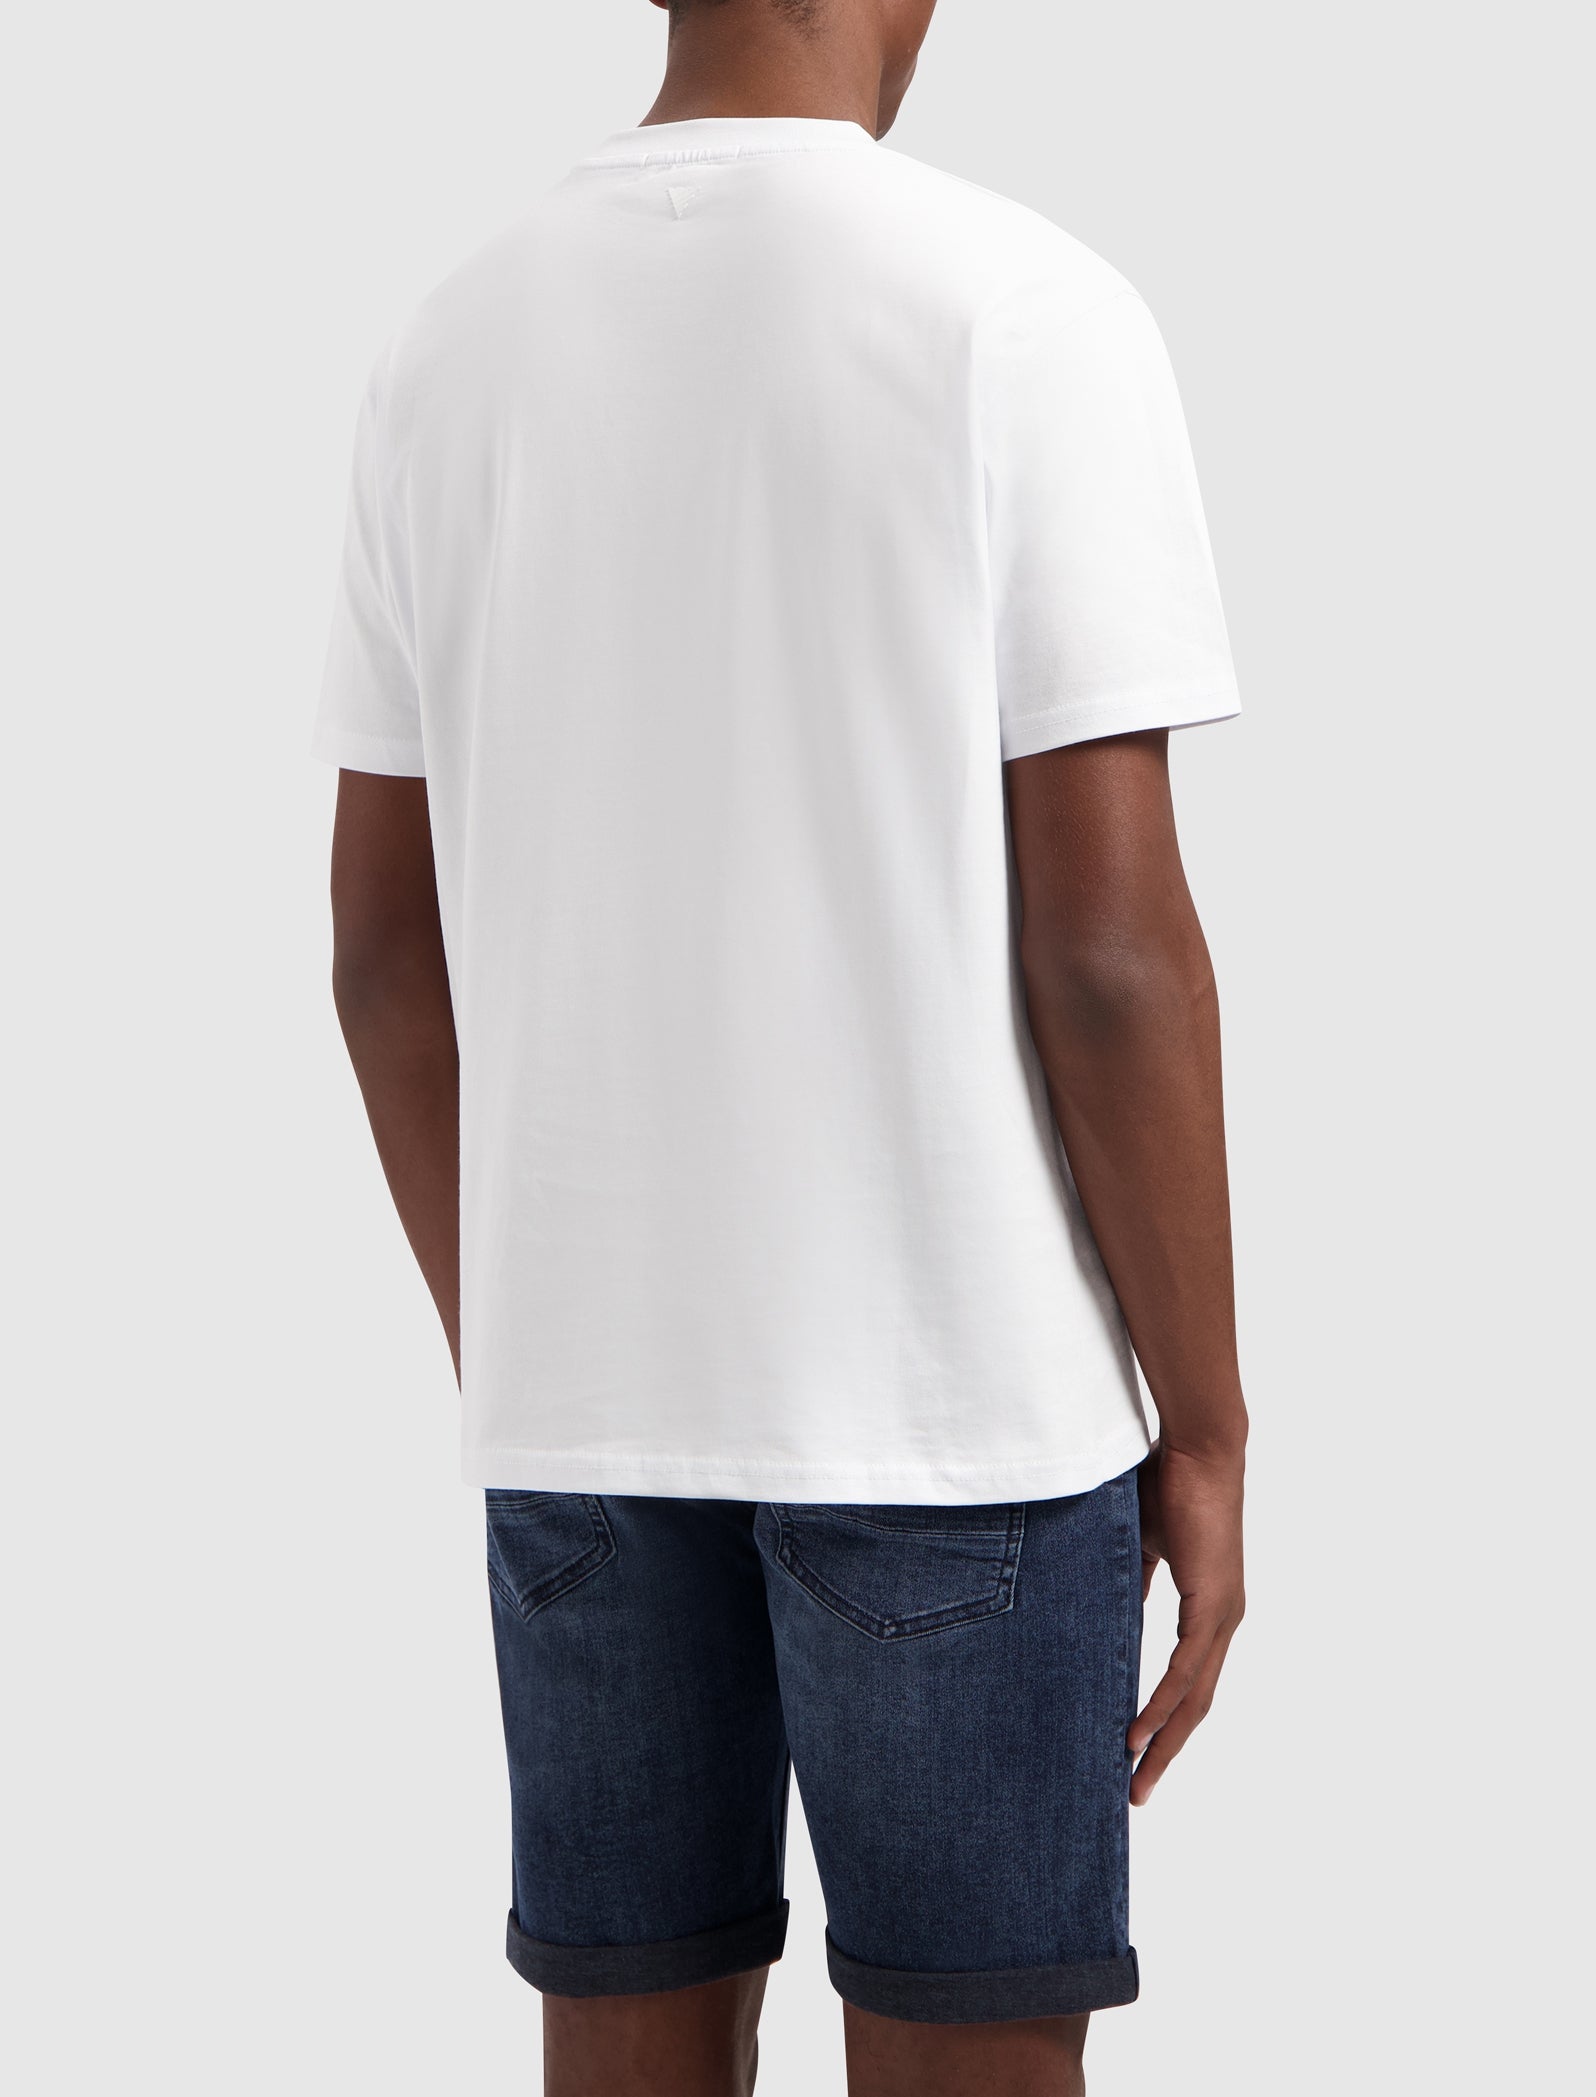 Wordmark T-shirt | White